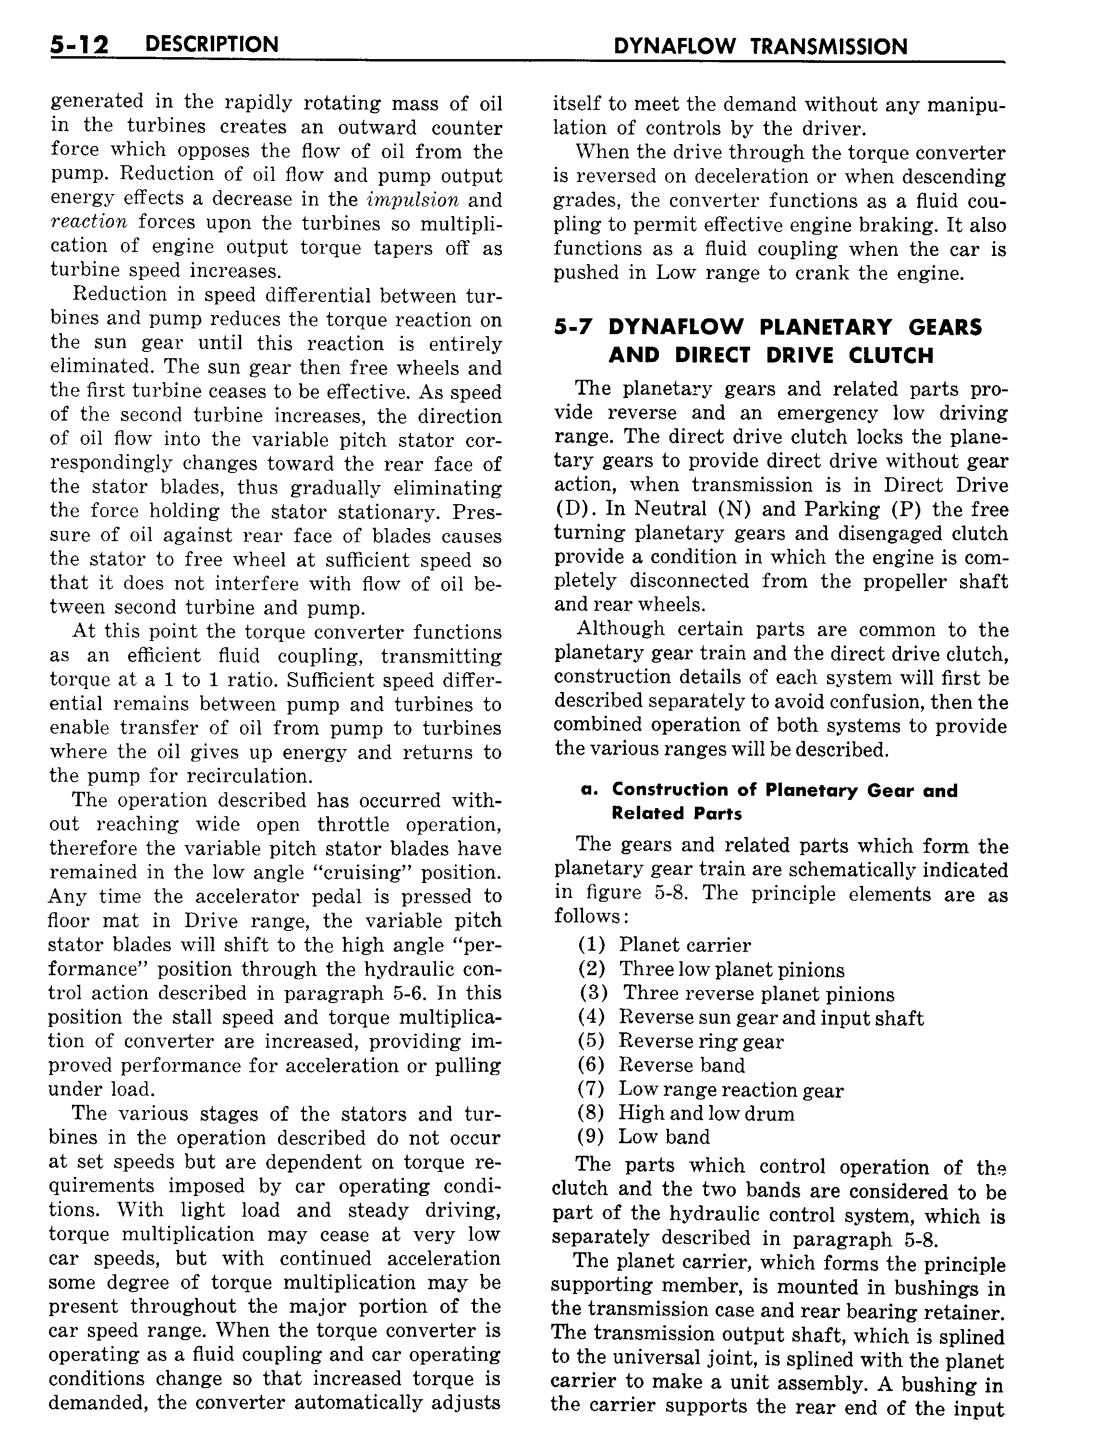 n_06 1957 Buick Shop Manual - Dynaflow-012-012.jpg